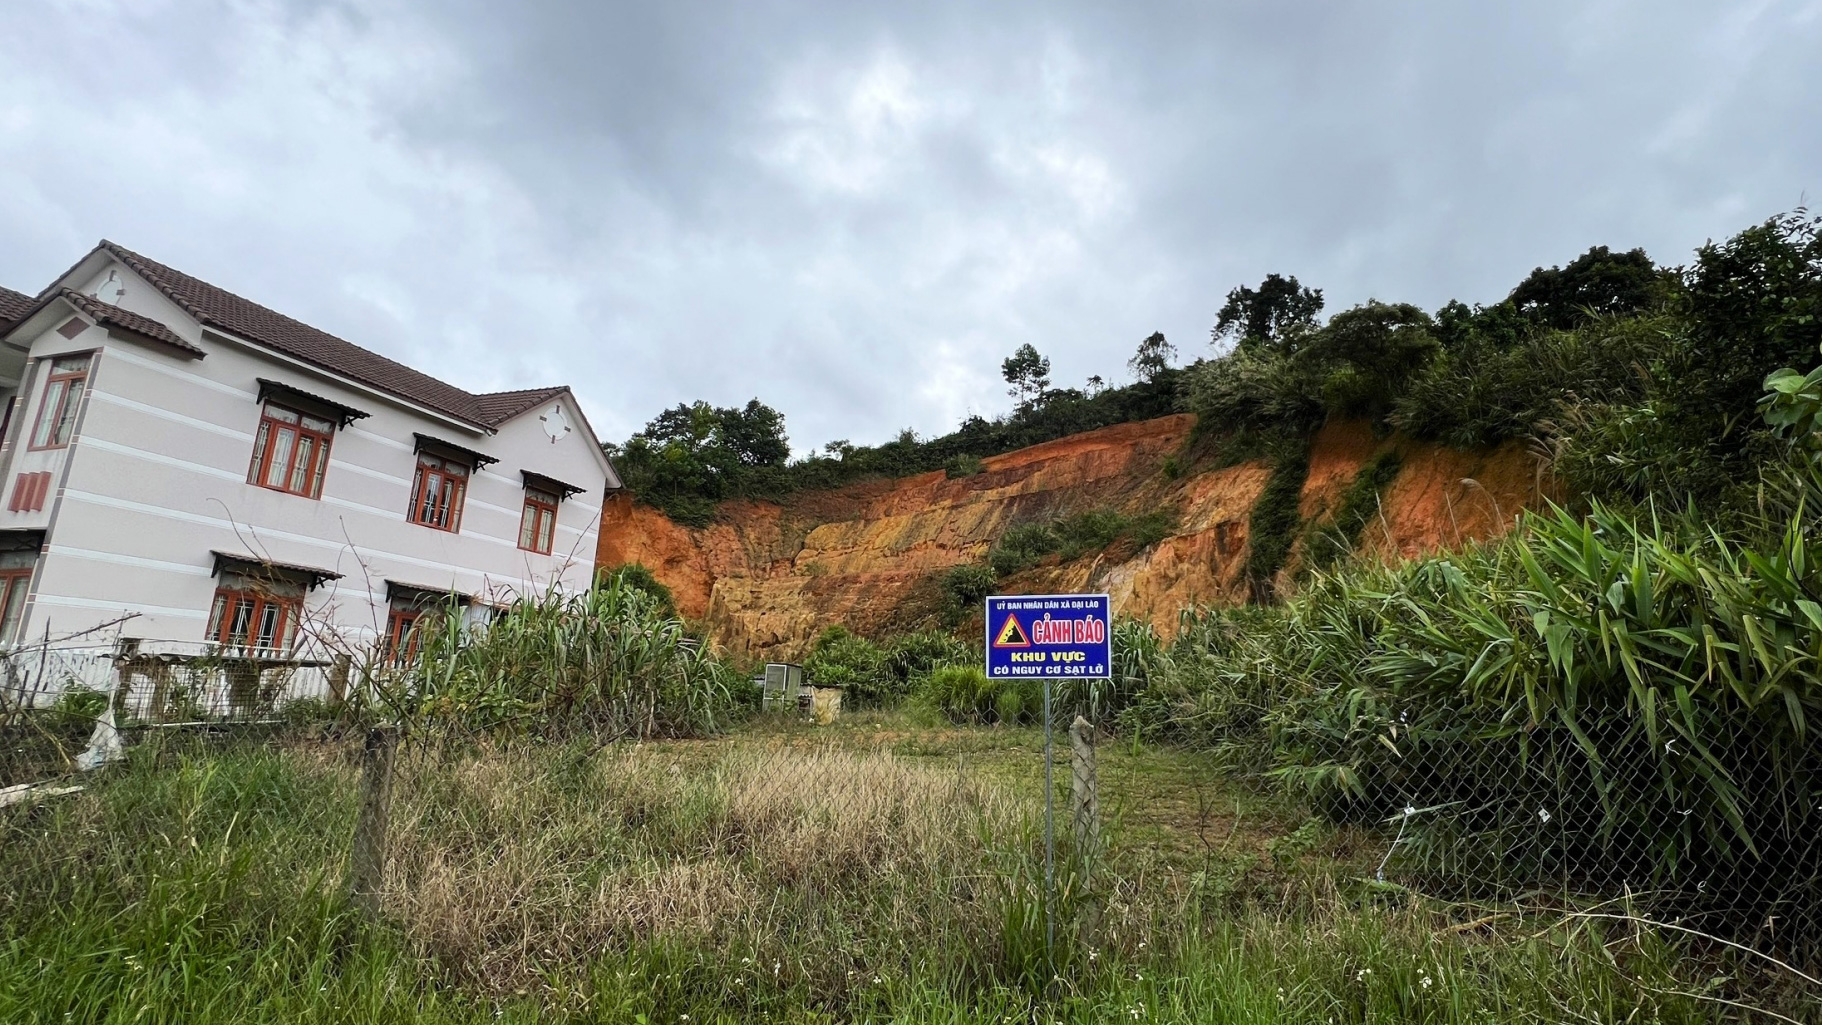 Tại xã Đại Lào đã có 3 hộ dân nằm trong vùng nguy cơ cao xảy ra sạt lở đất tại Thôn 6 đã di dời đến nơi an toàn